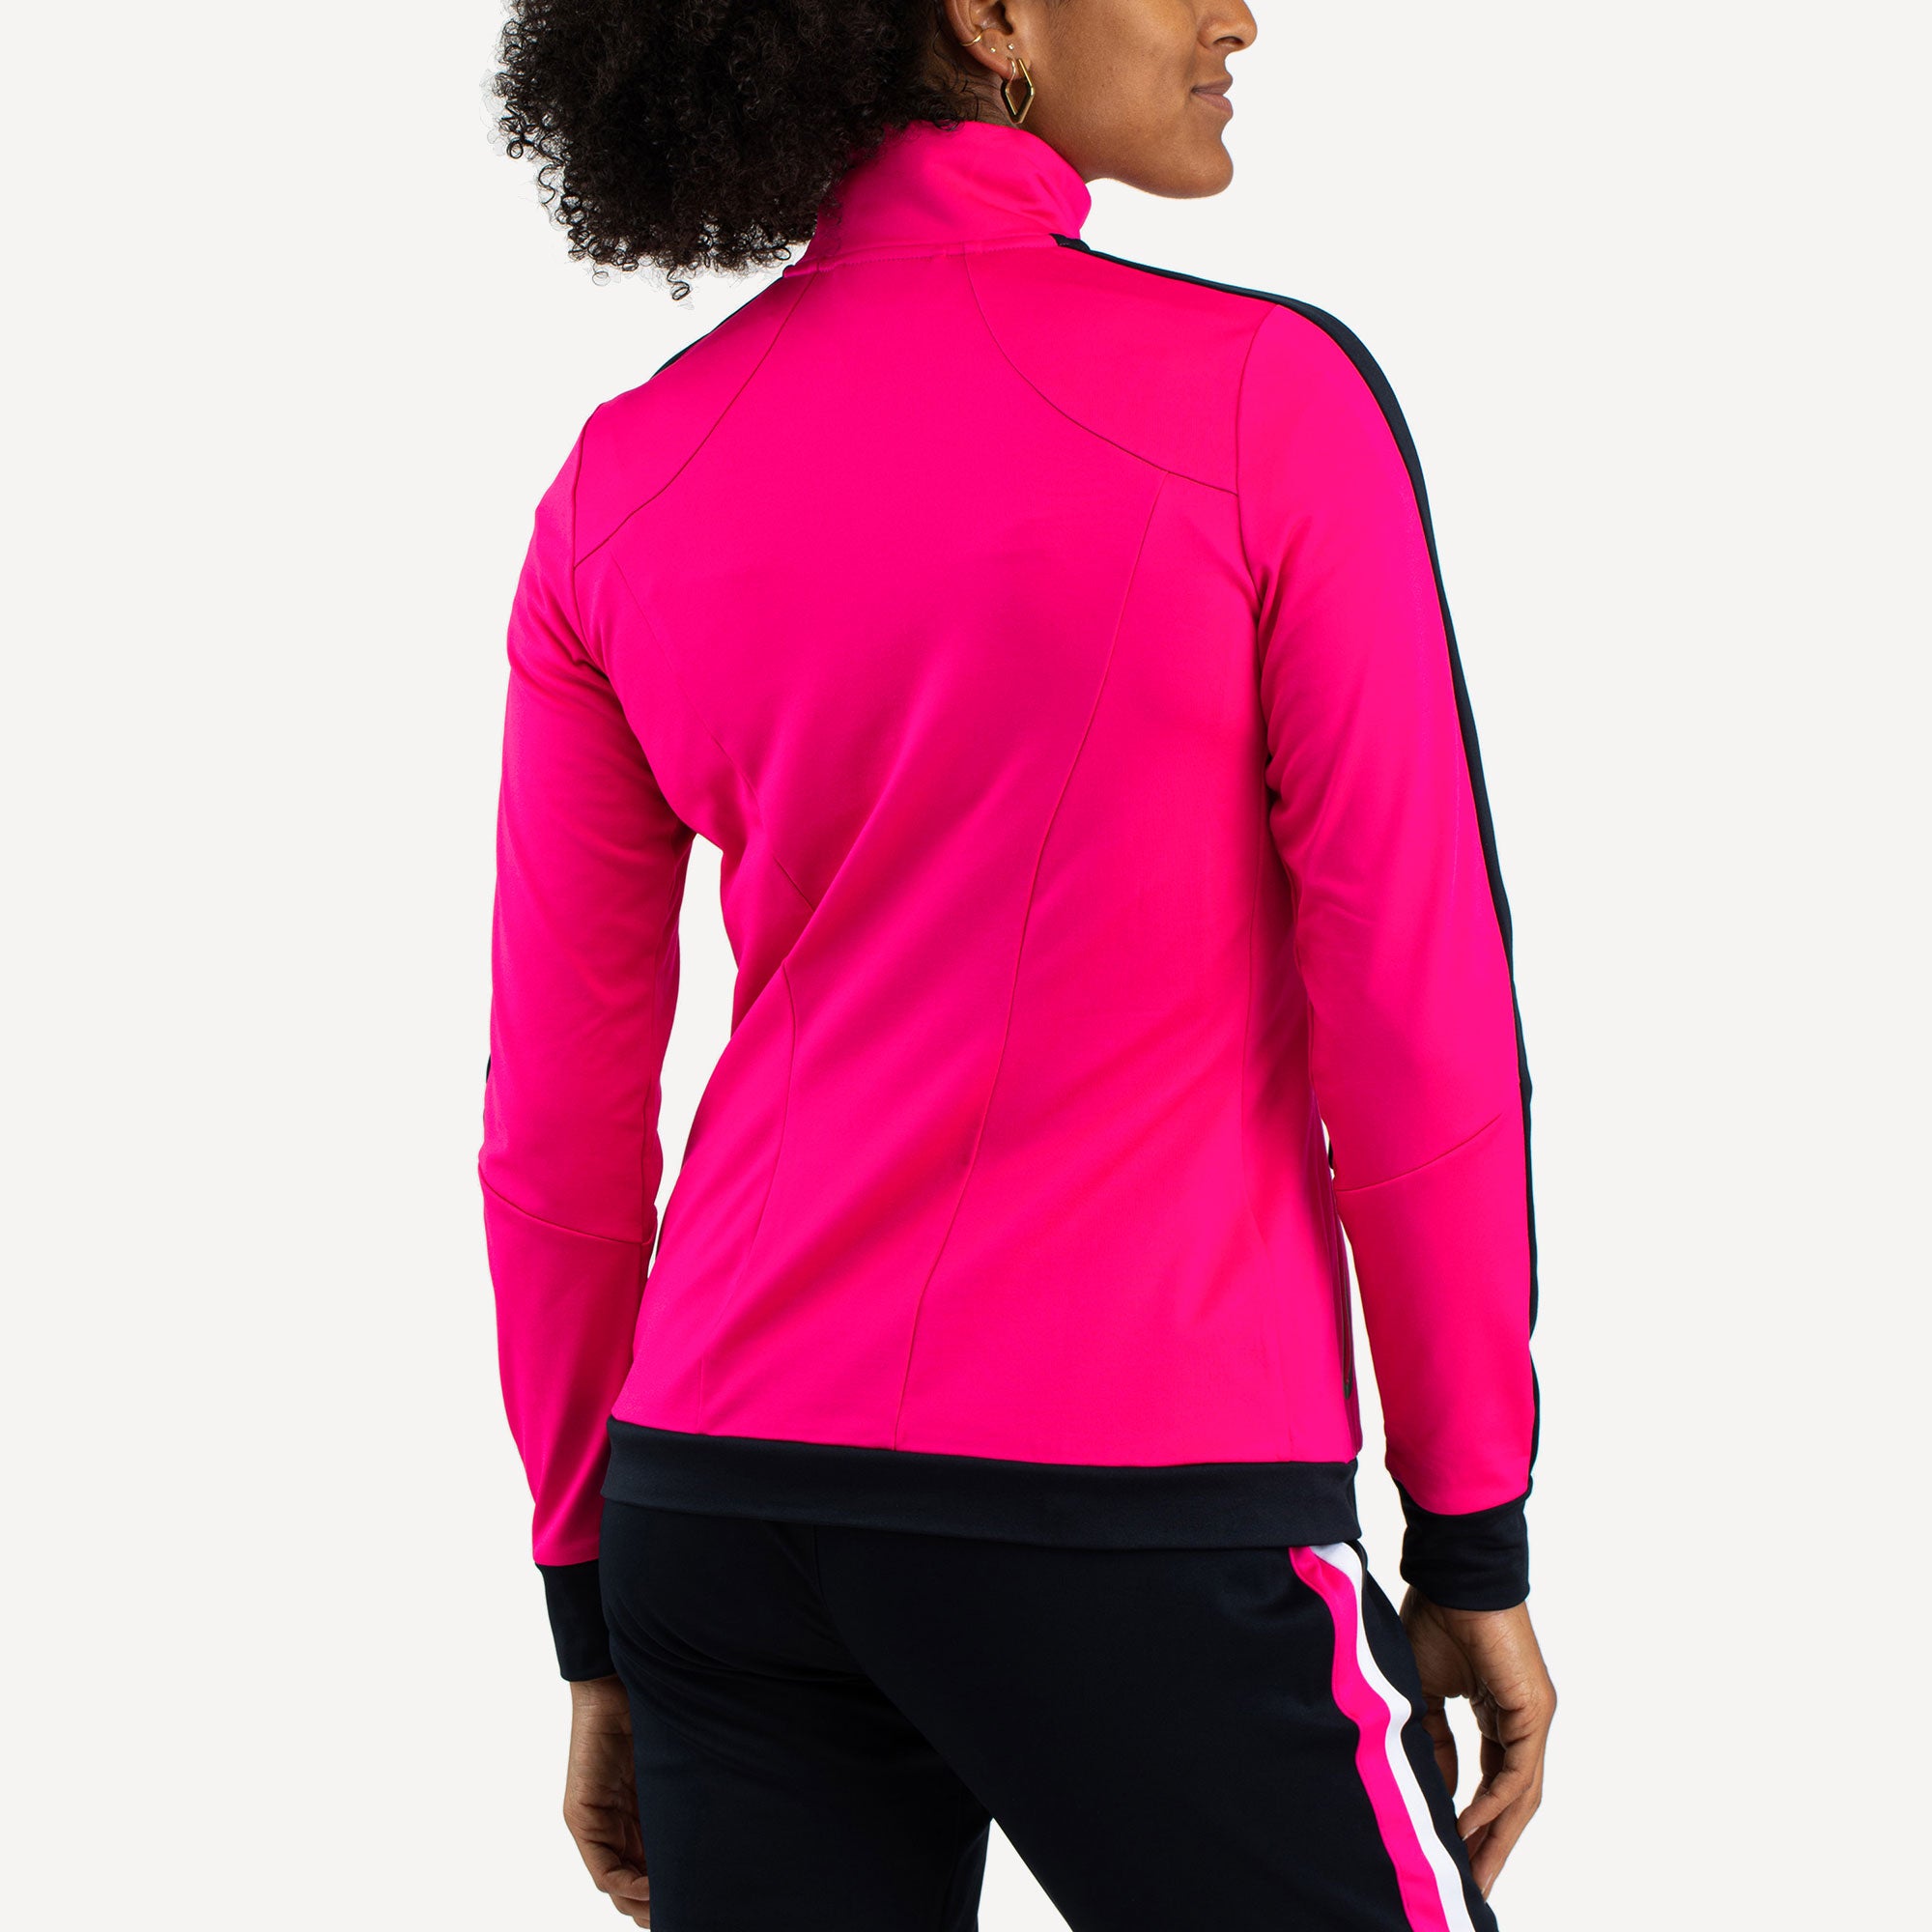 Sjeng Sports Aviva Women's Tennis Jacket Pink (2)